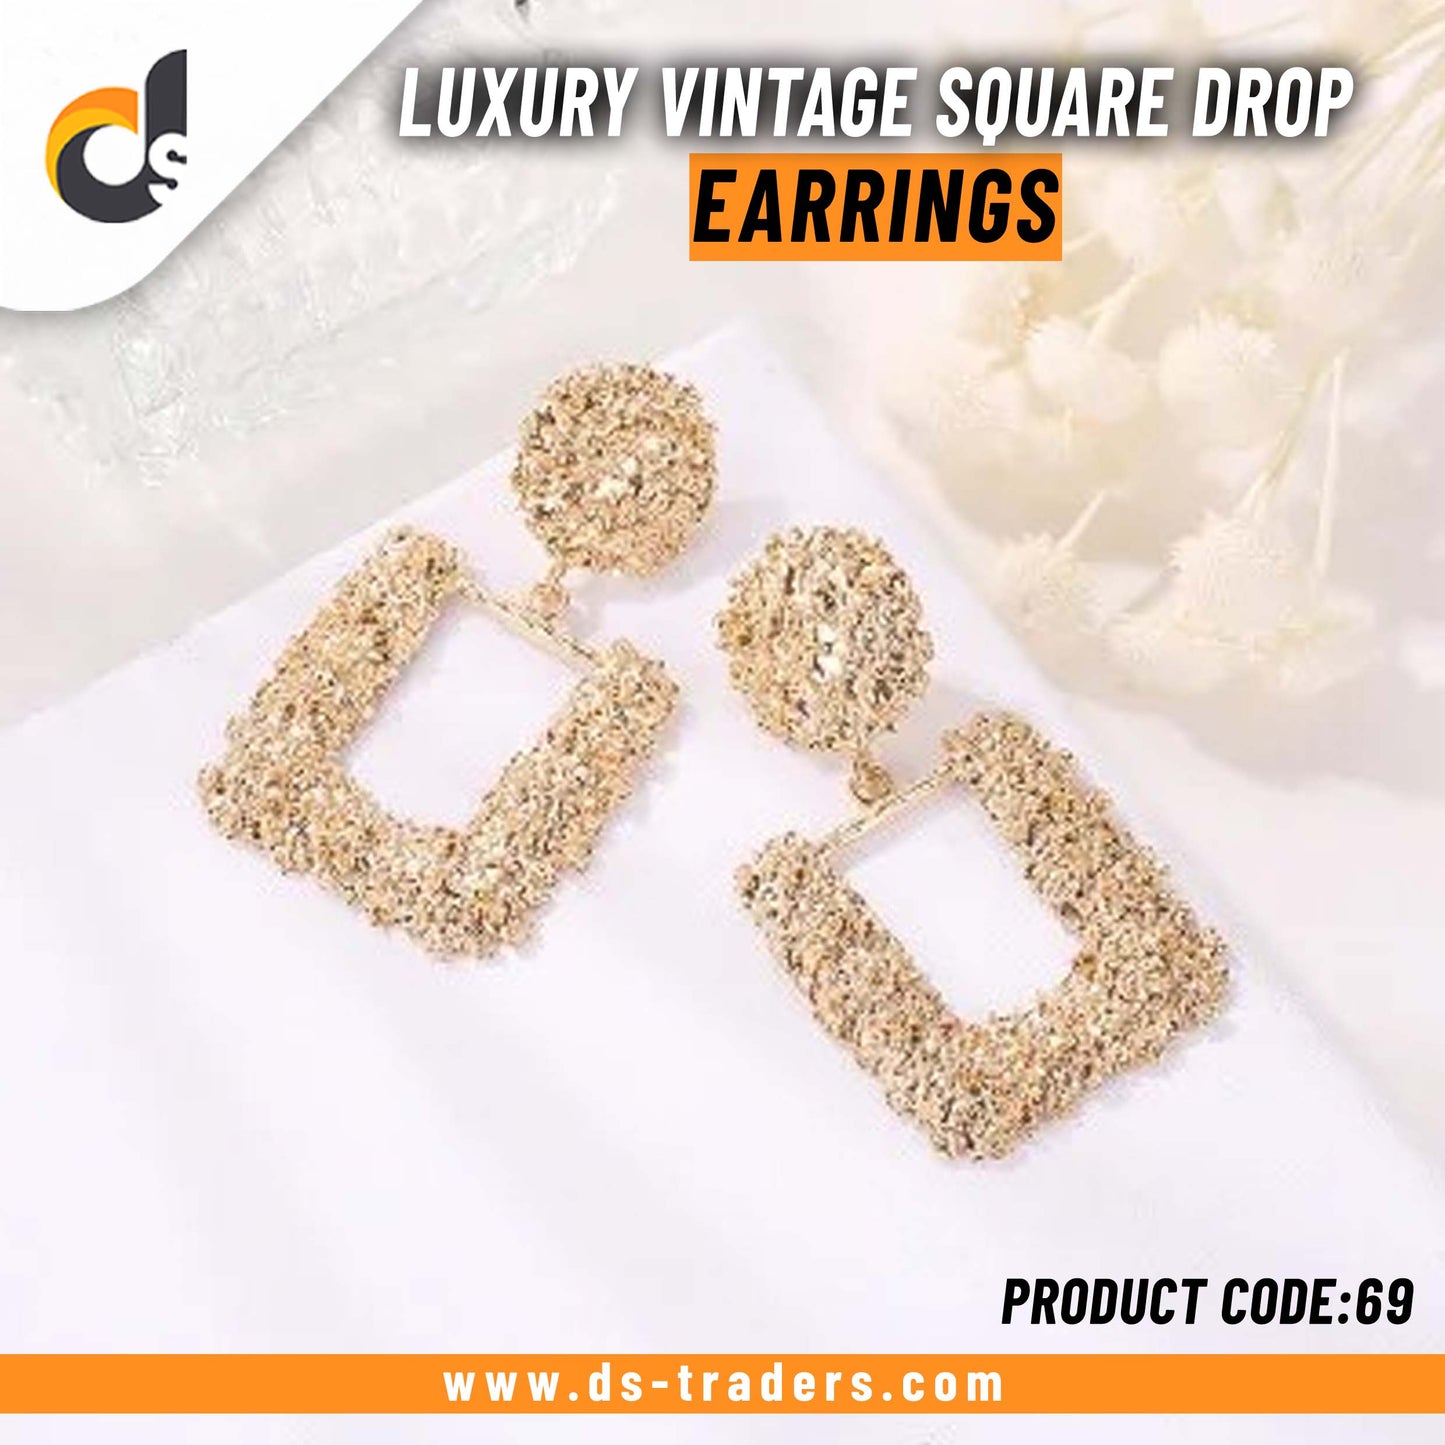 Luxury Vintage Square Drop Earrings